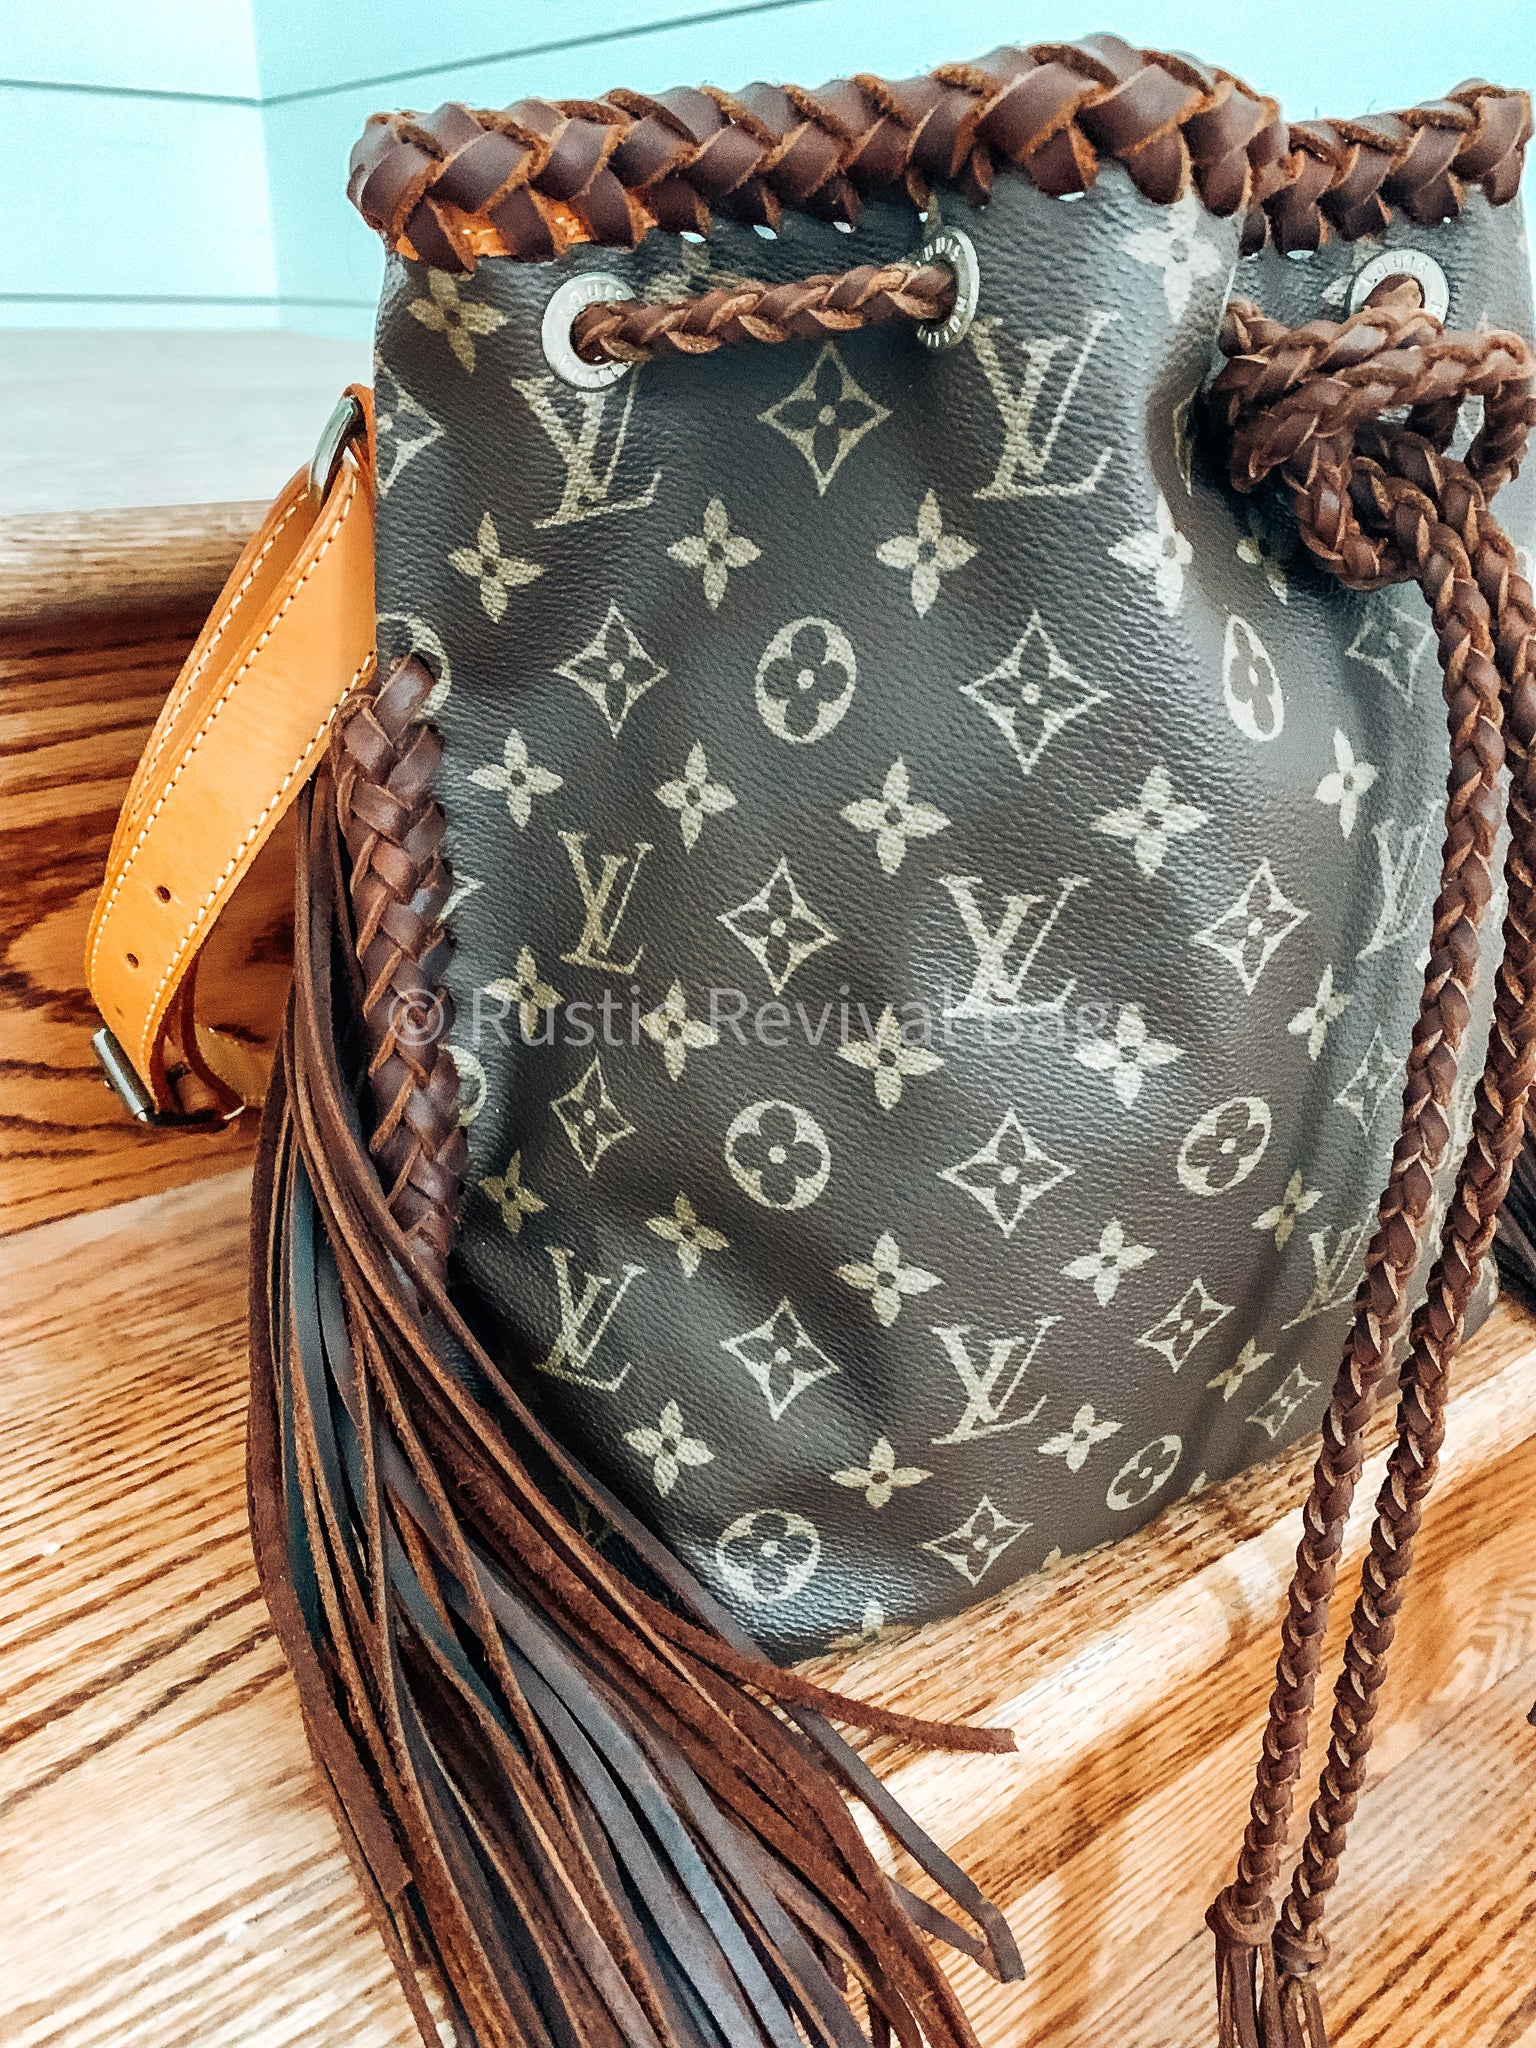 Louis Vuitton, Bags, Pt 4 Lv Noe Gm W Braided Strap